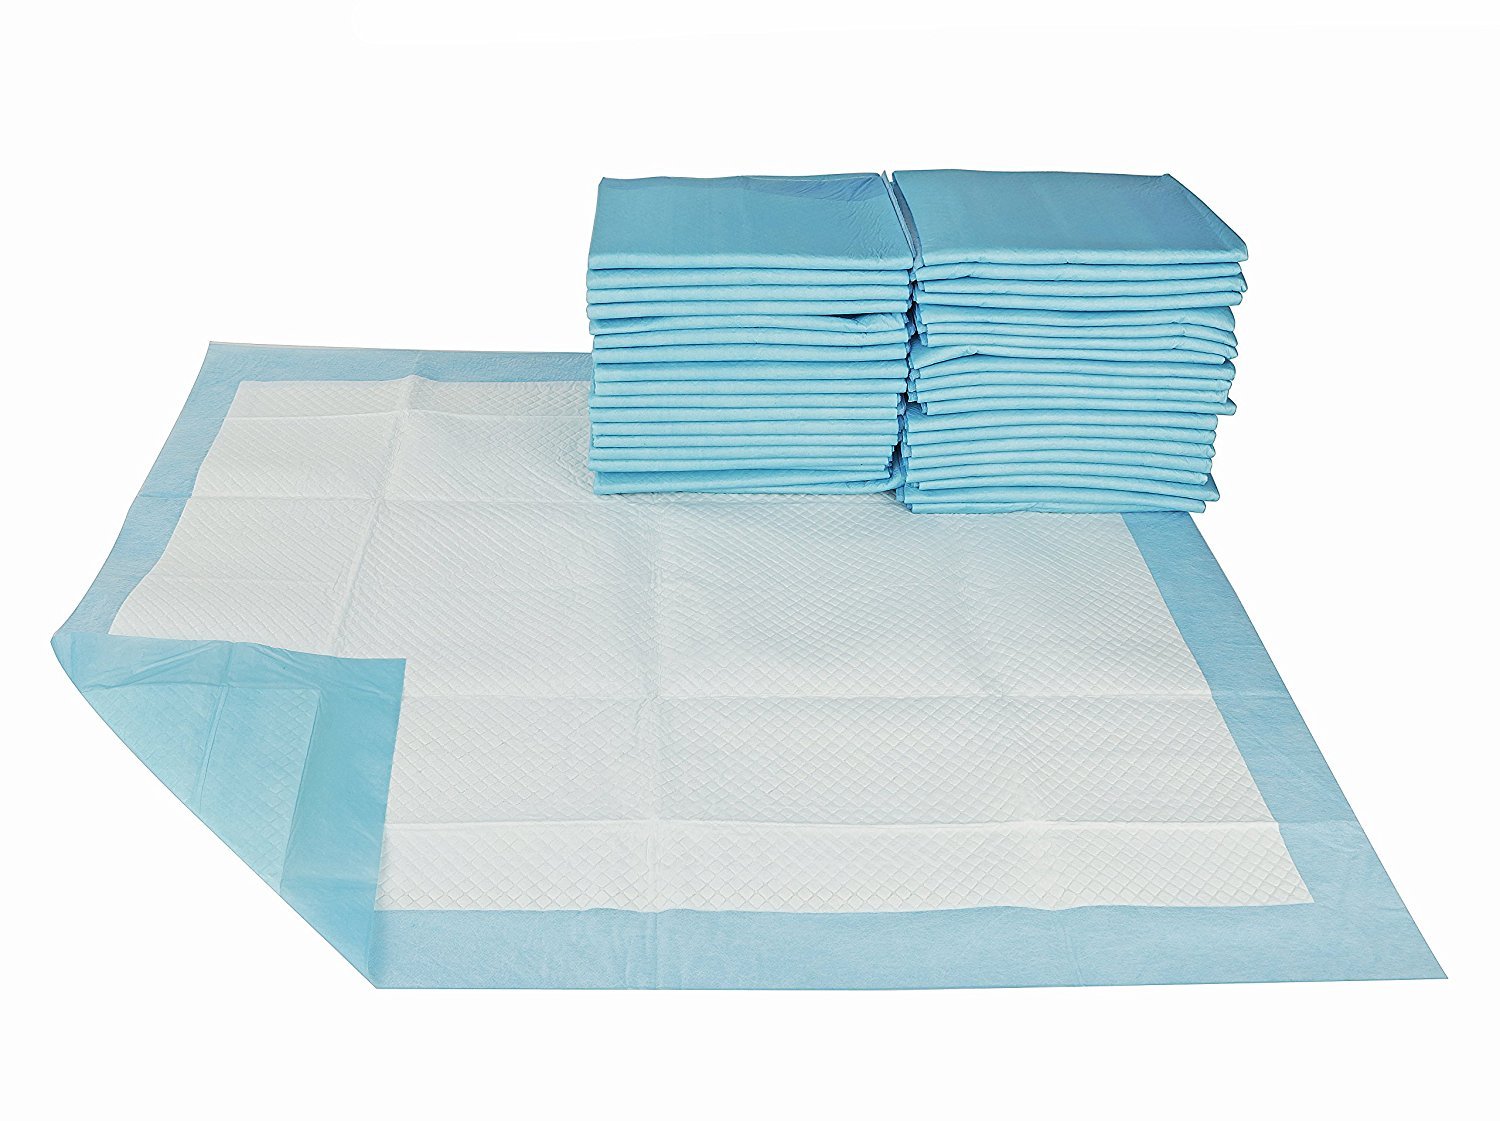 Sottoimbottitura personalizzata OEM con materassino medico usa e getta con superficie asciutta per assistenza infermieristica